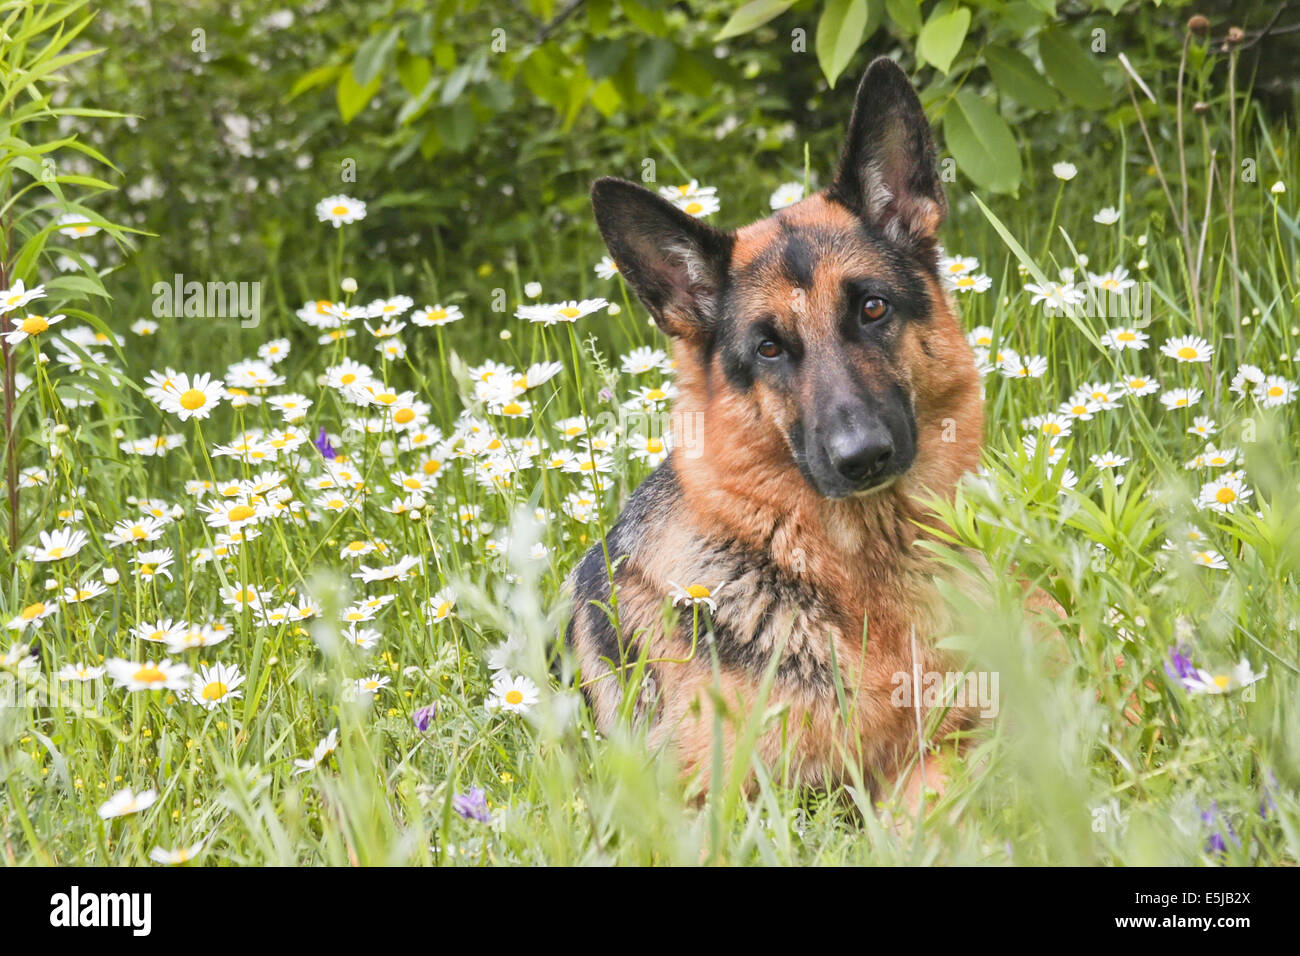 Der Hund Deutscher Schäferhund liegt auf einer Lichtung in einem grünen Rasen und Blumen, in weißen Margeriten, Kamille Stockfoto